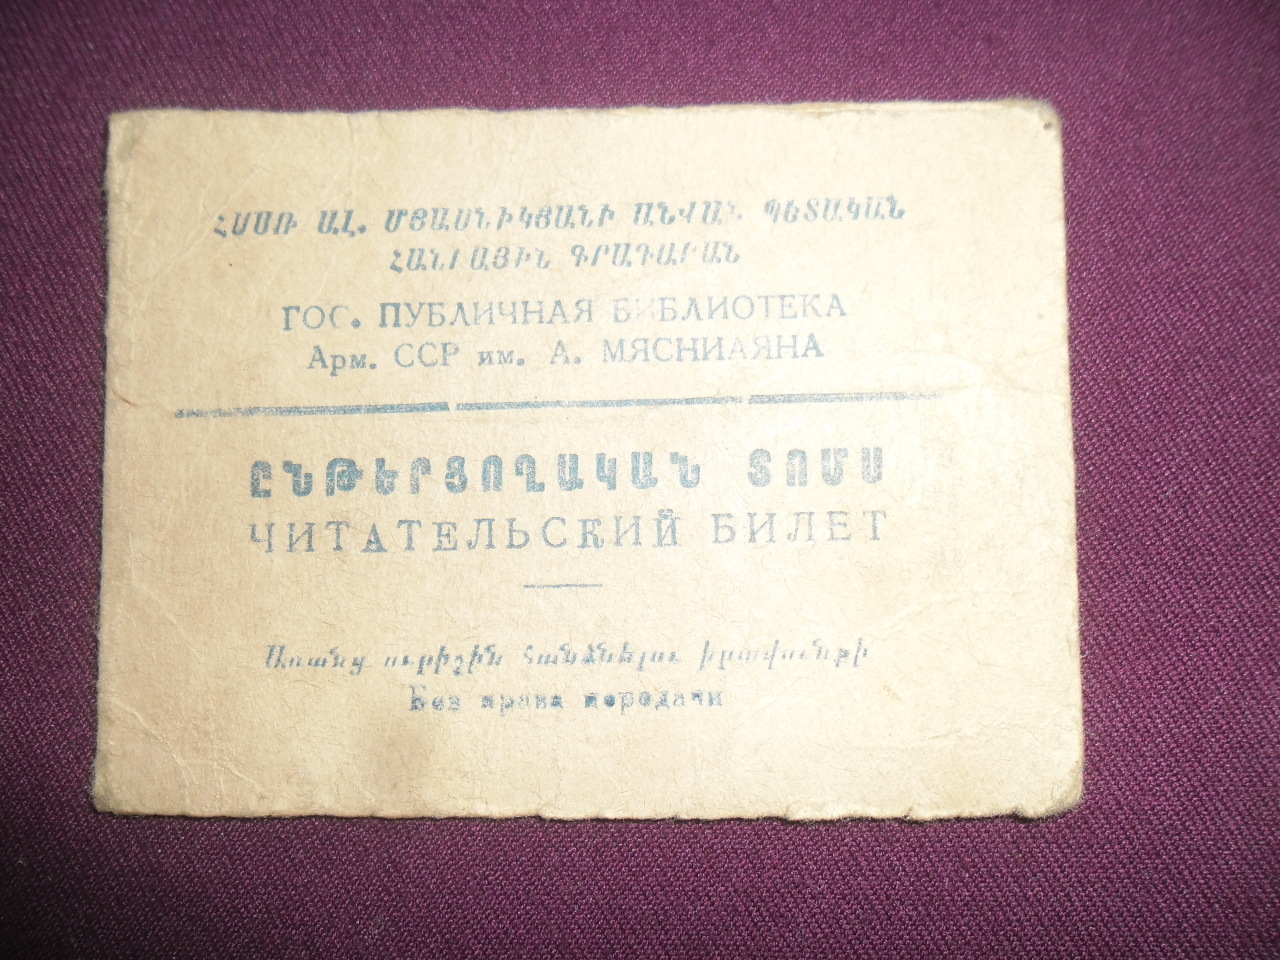   Ընթերցողական տոմս՝  Հրաչյա Կարապետի Բուռնազյանի ( Մայիսյան ապստամբության և Հայրենական պատերազմի մասնակից, պարտիզան, իրավաբան)  